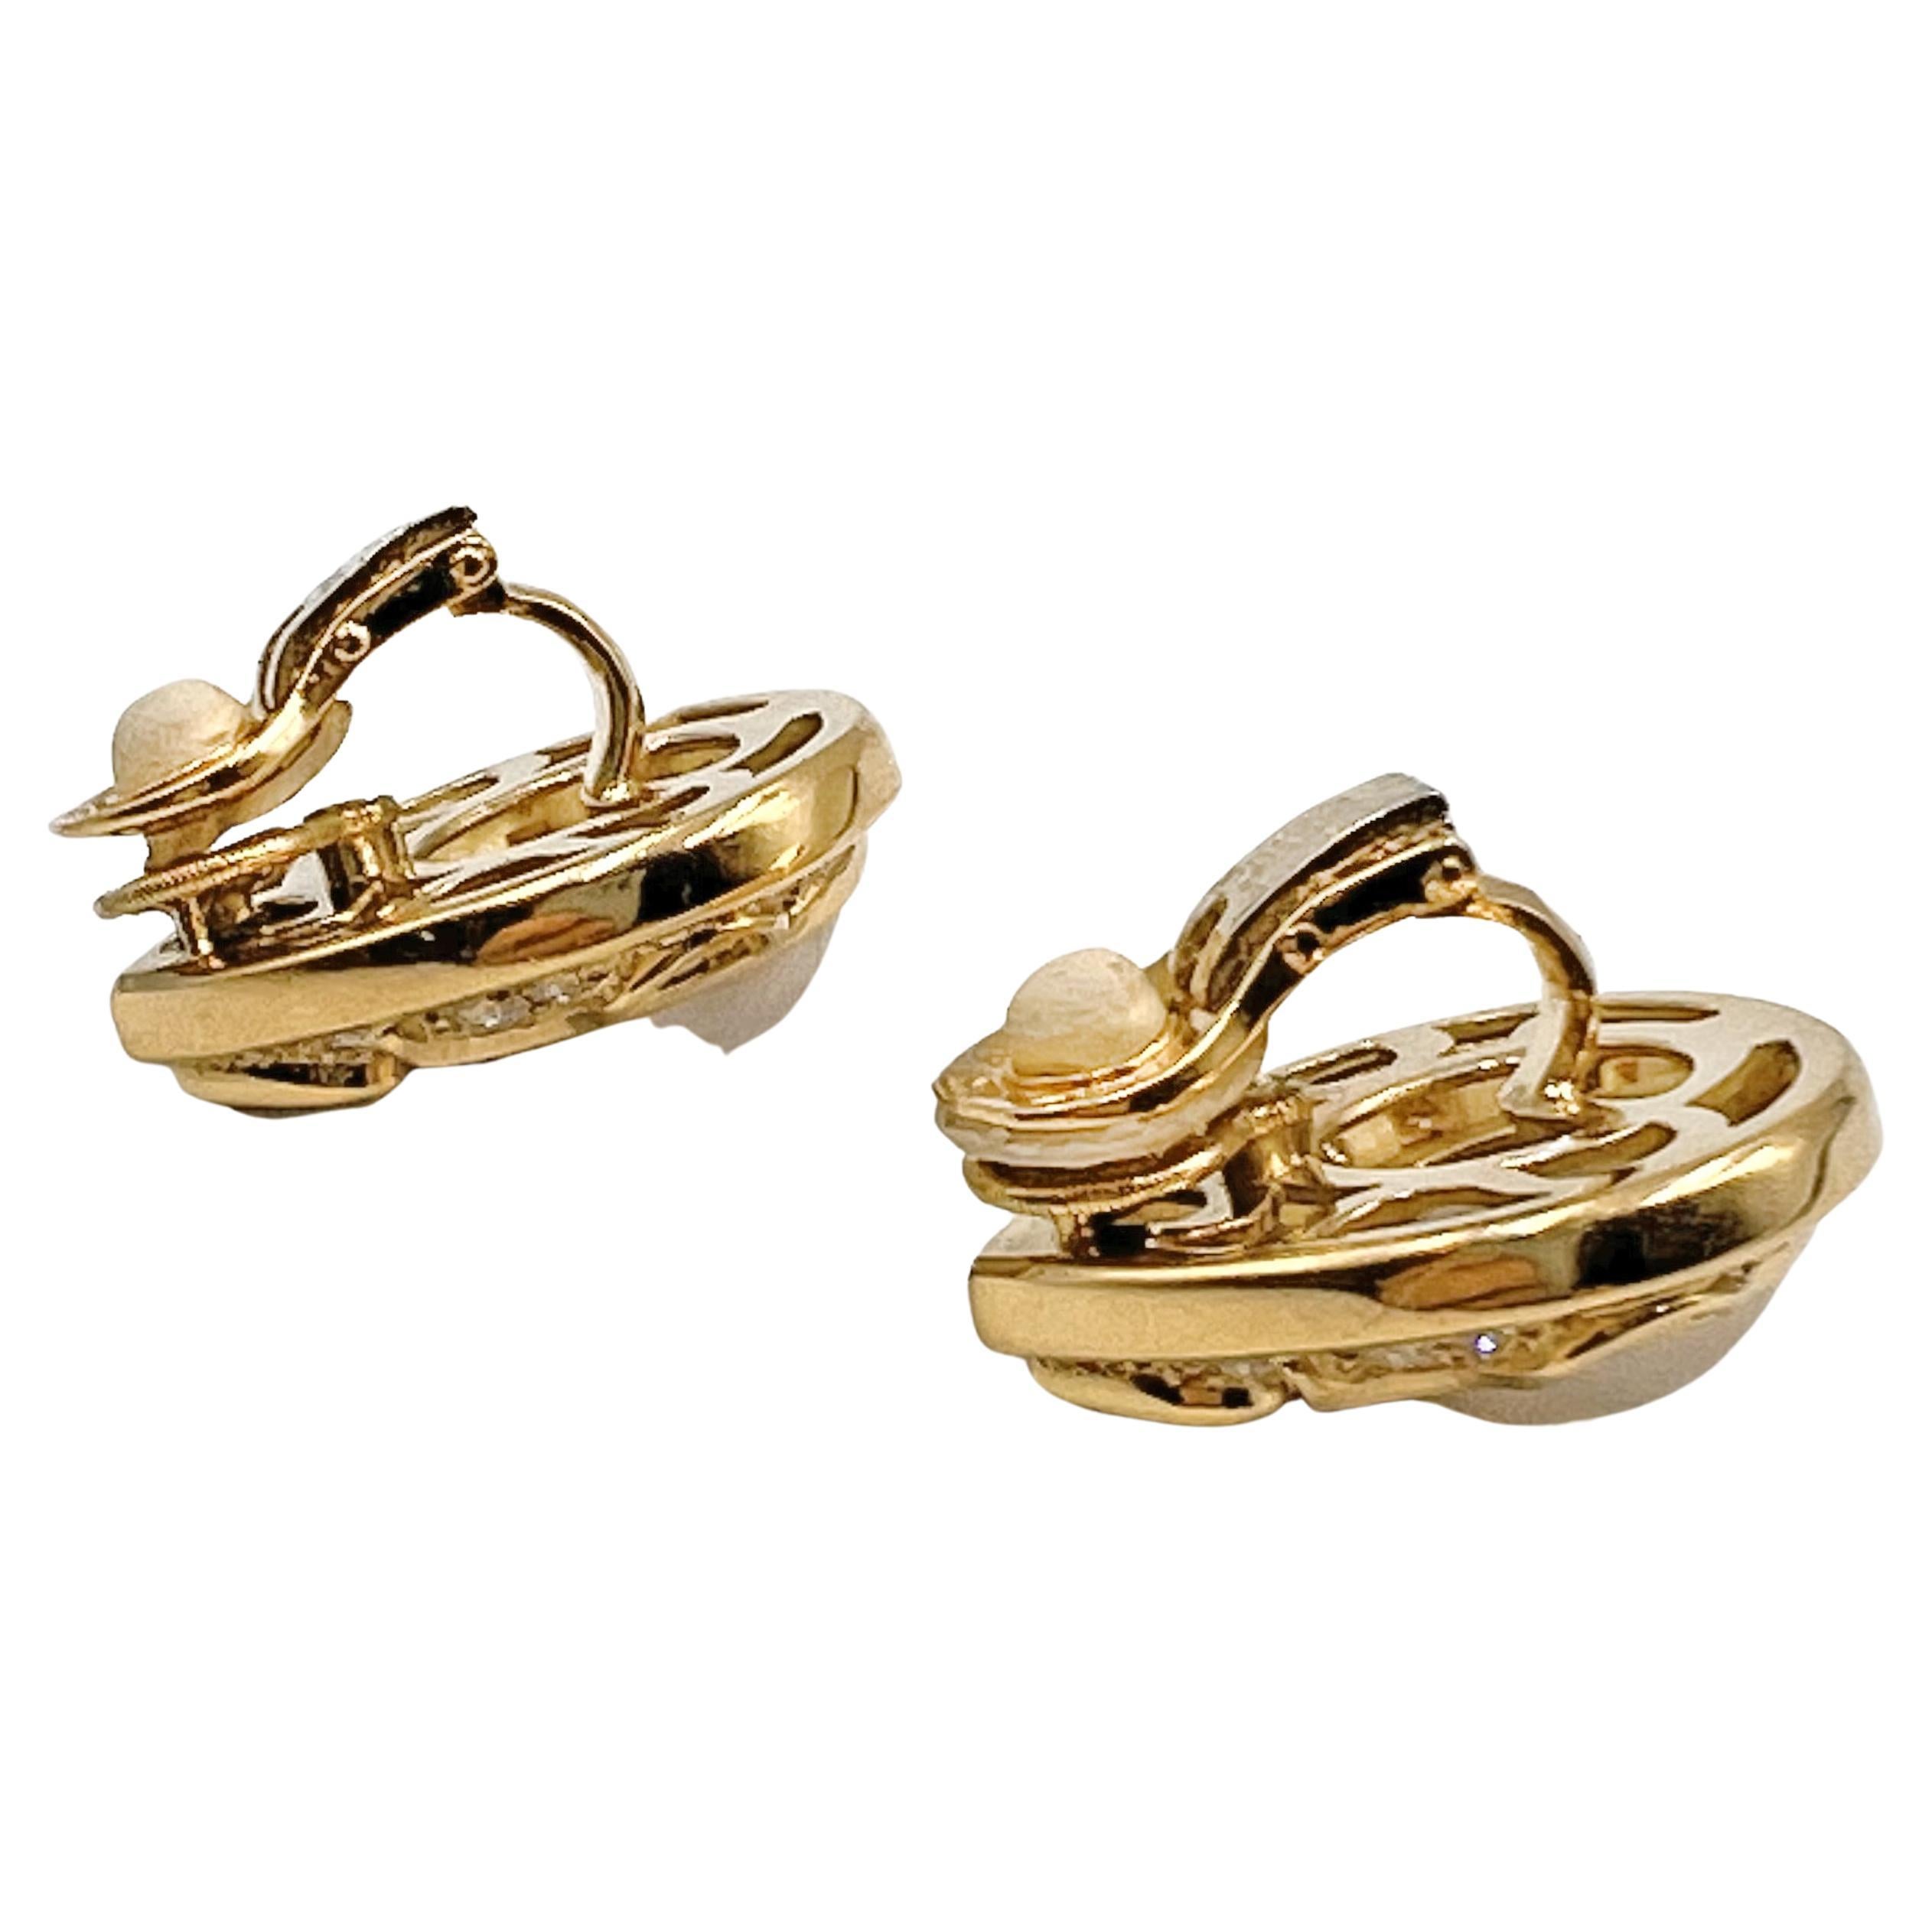 Brilliant Cut Marina B 18k Gold Pearl Diamond Clip Earrings